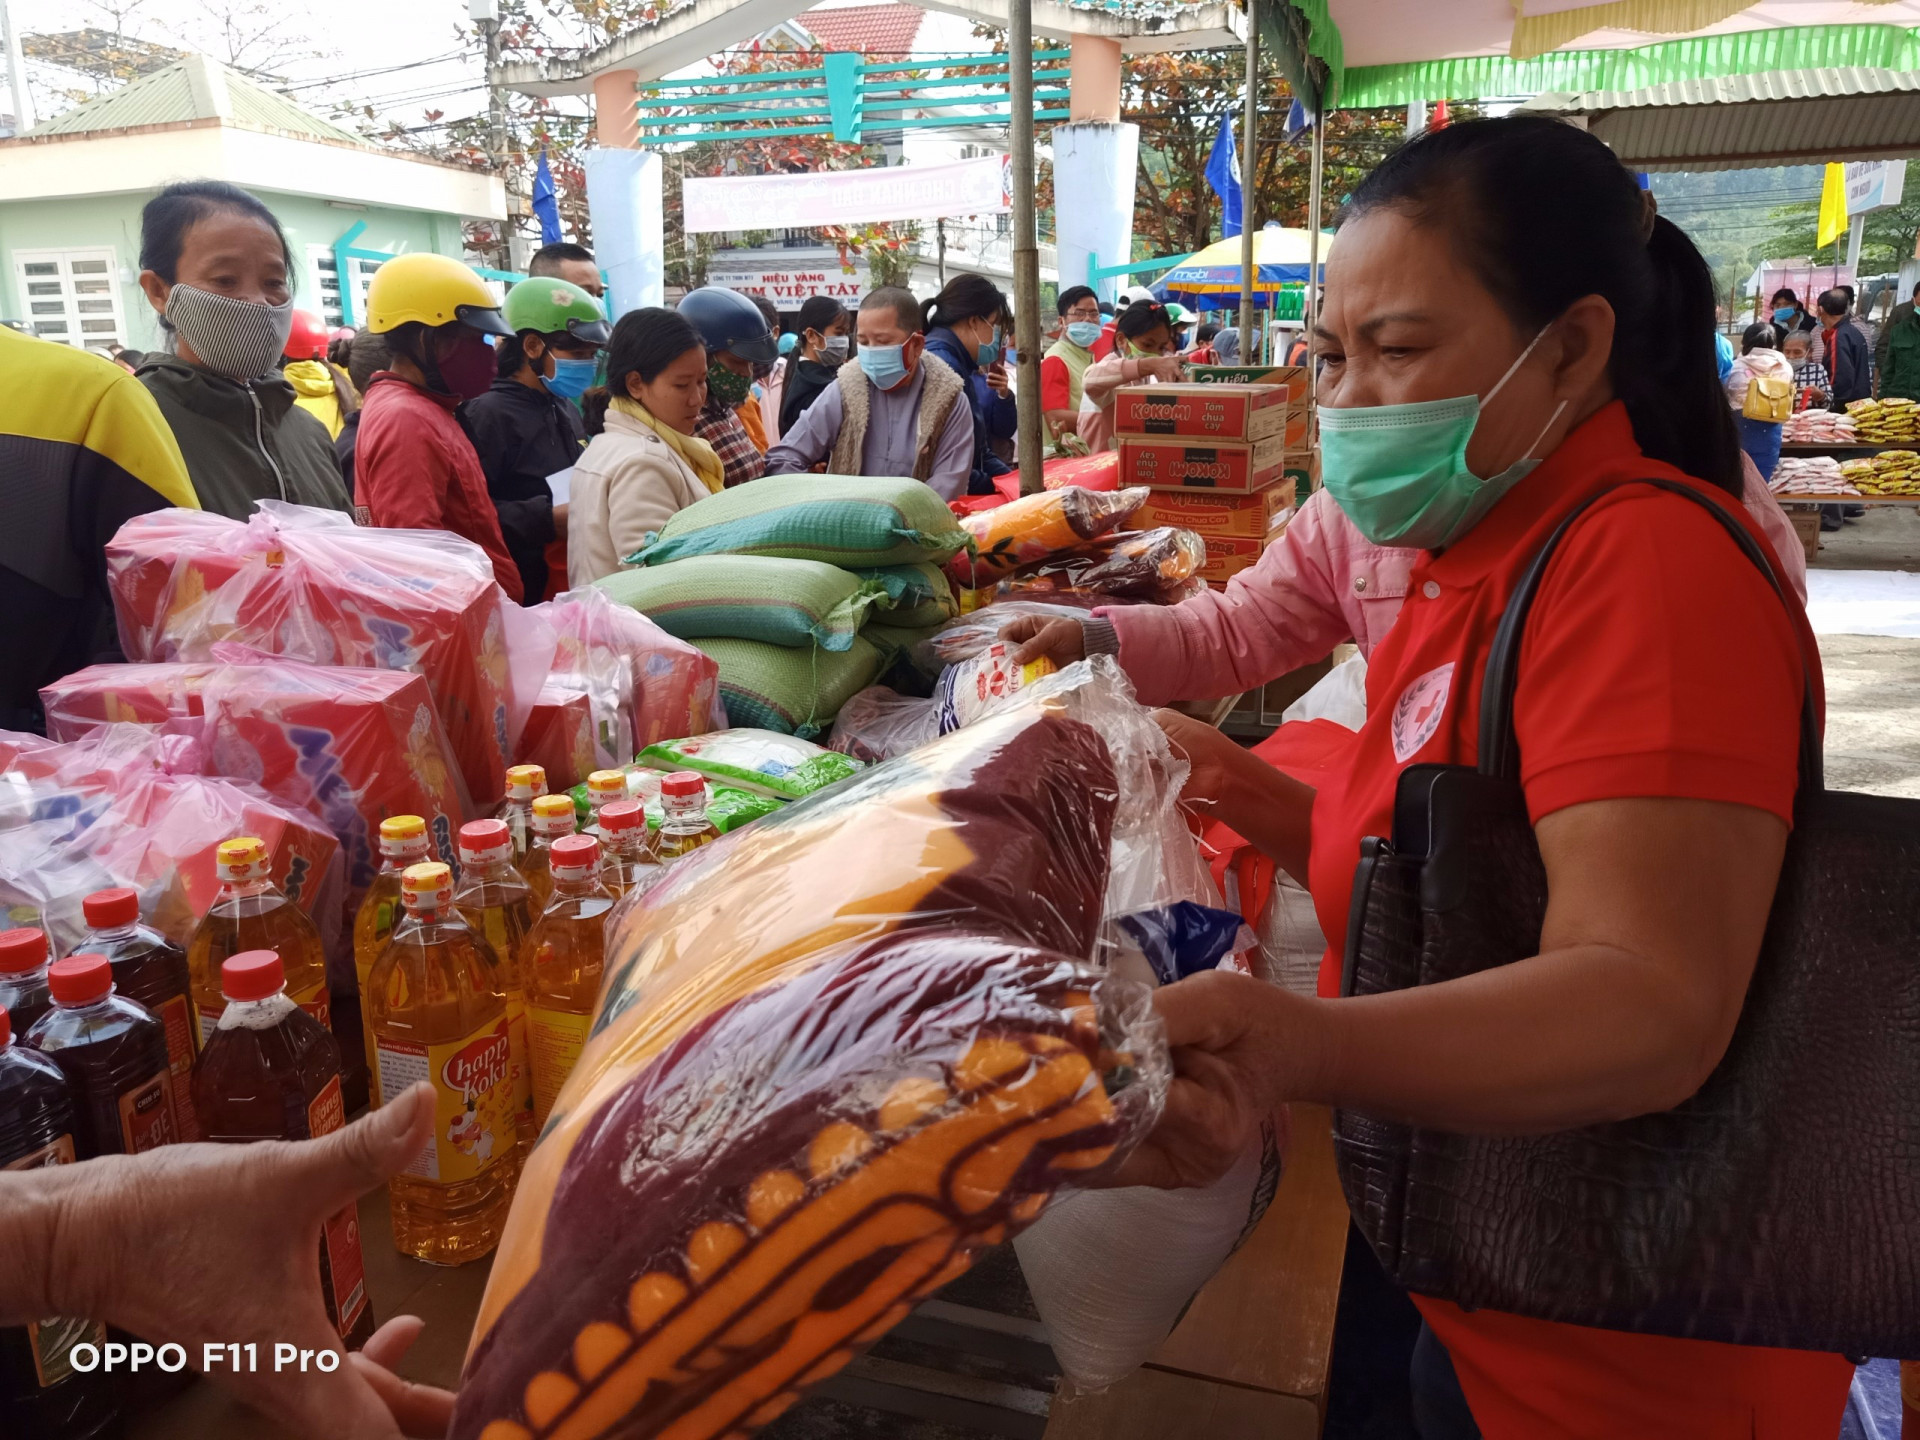 Hội chợ nhân đạo bày bán các mặt hàng thực phẩm thiết yếu